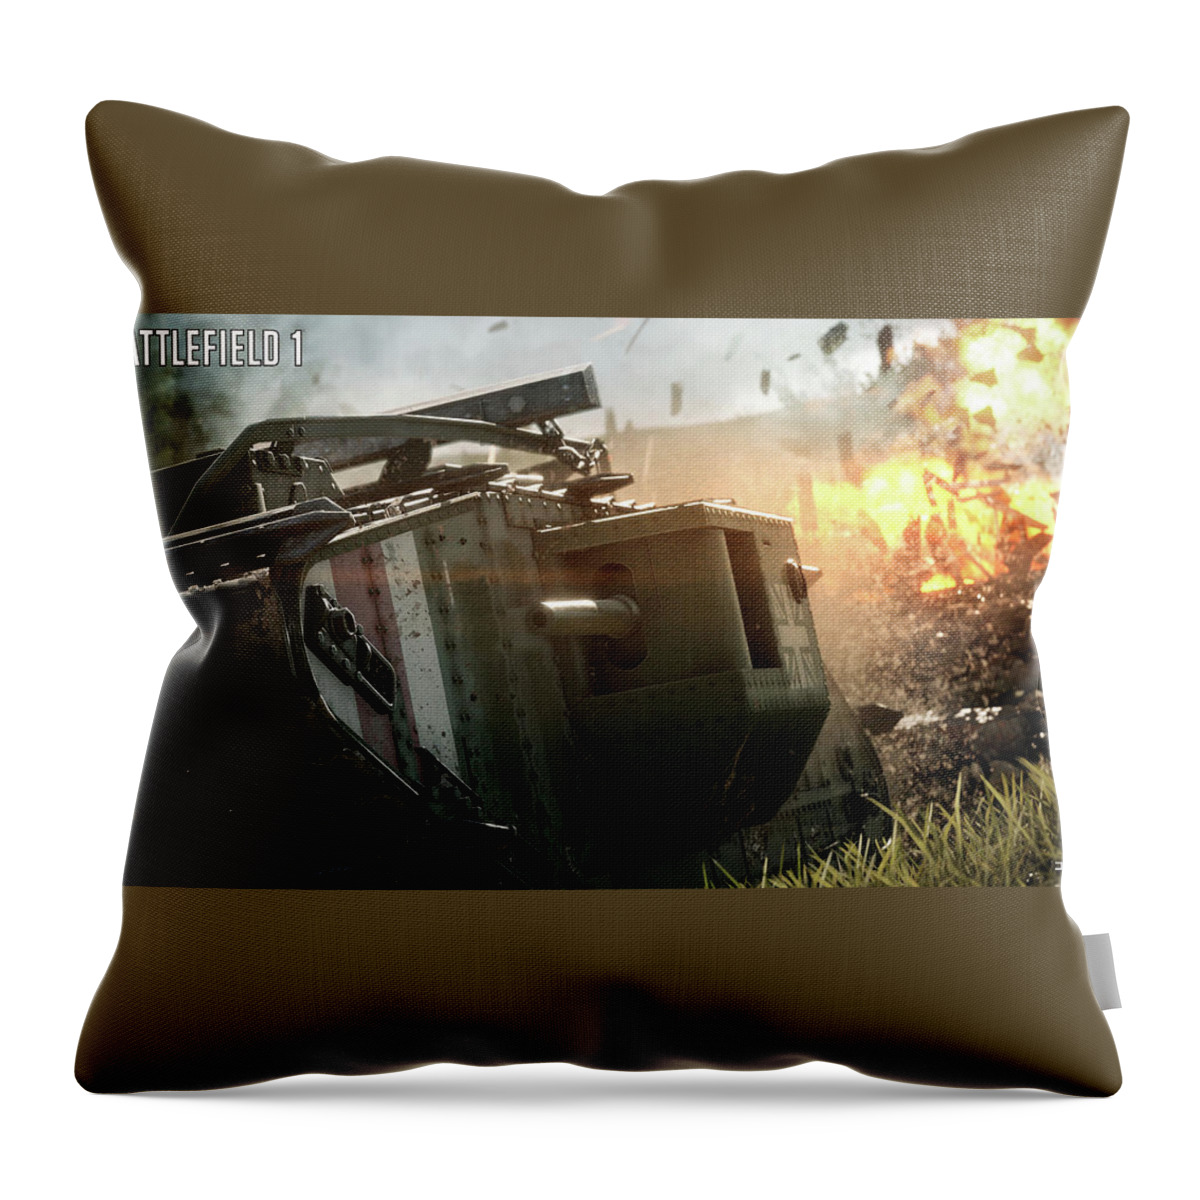 Battlefield 1 Throw Pillow featuring the digital art Battlefield 1 #3 by Super Lovely